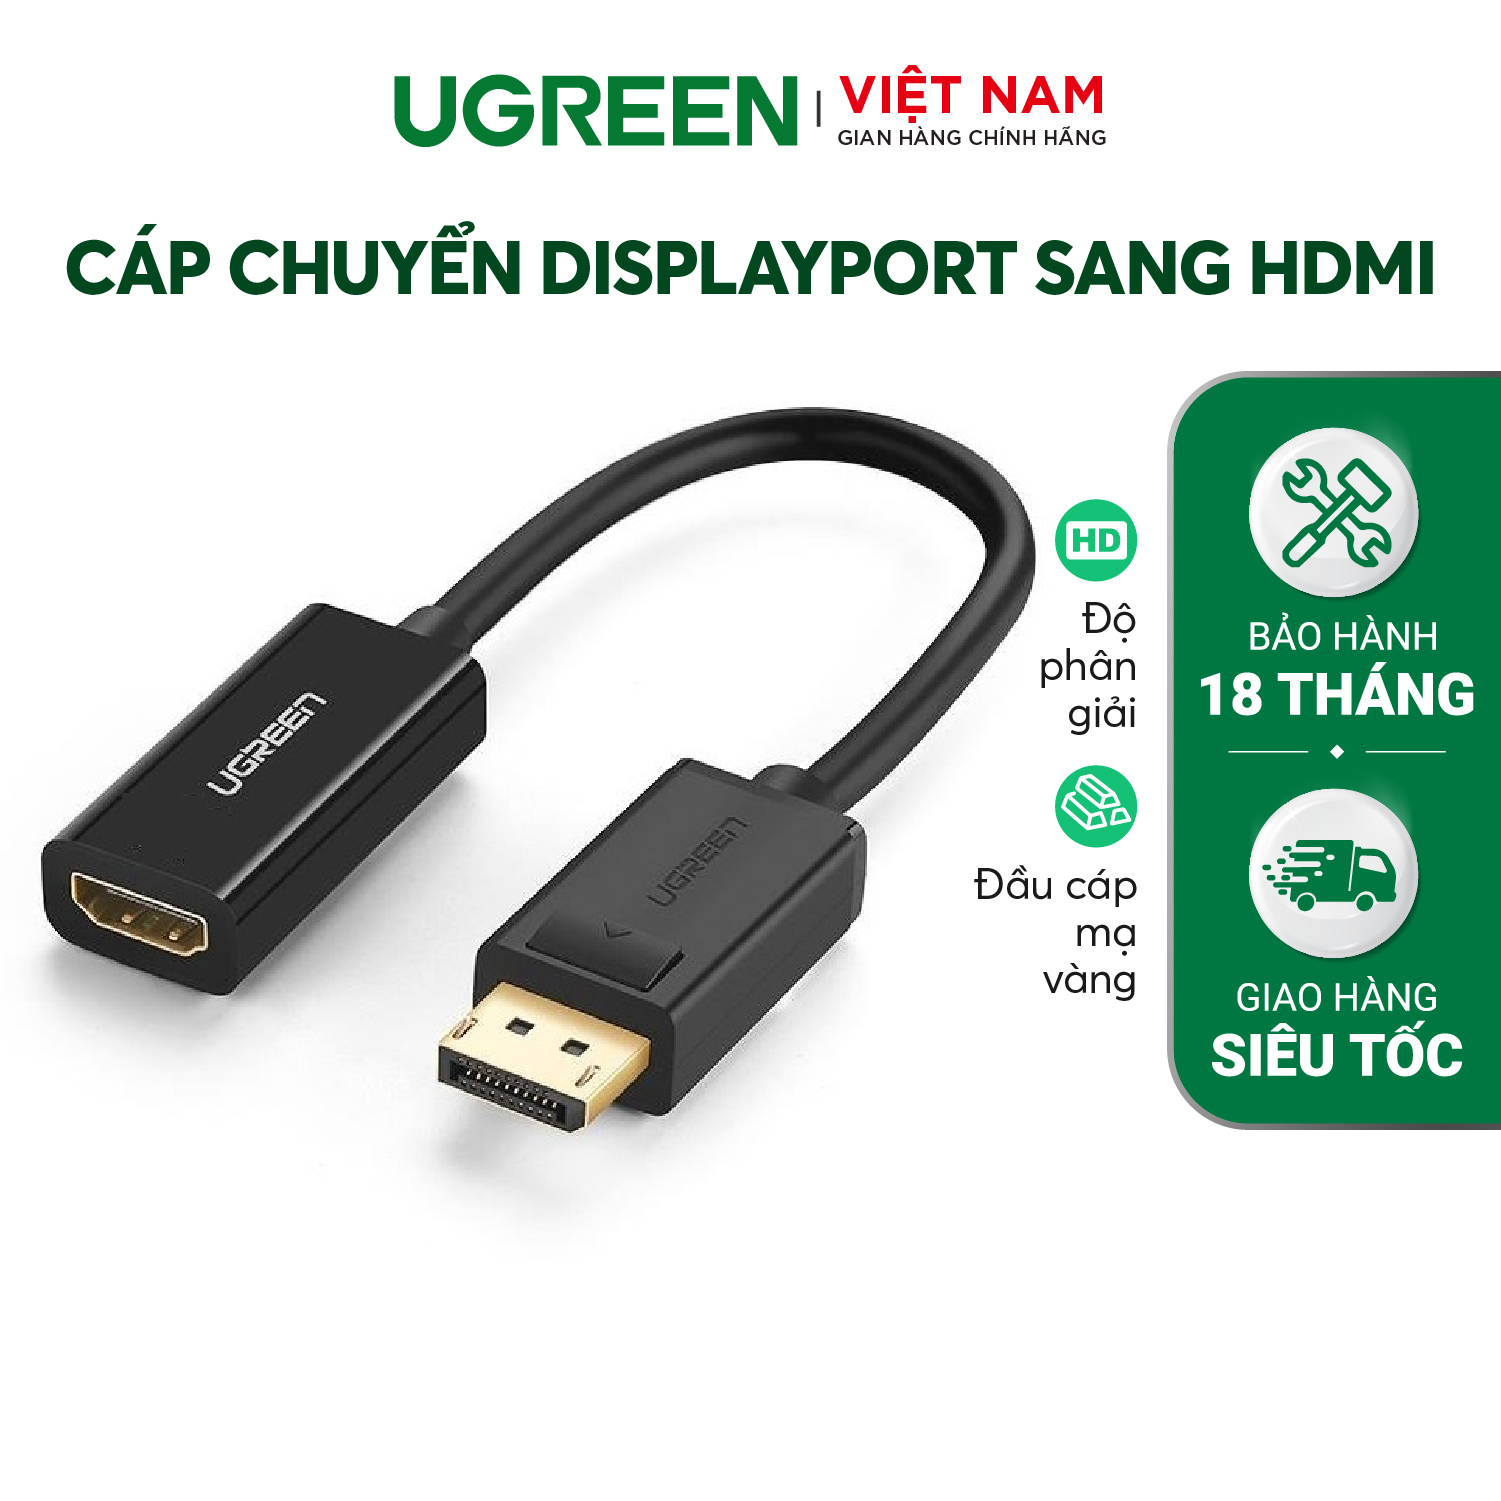 Cáp chuyển đổi DisplayPort sang HDMI UGREEN 40362 – Hỗ trợ Full HD, đầu tiếp xúc mạ vàng – Hãng phân phối chính thức – Bảo hành 18 tháng 1 đổi 1